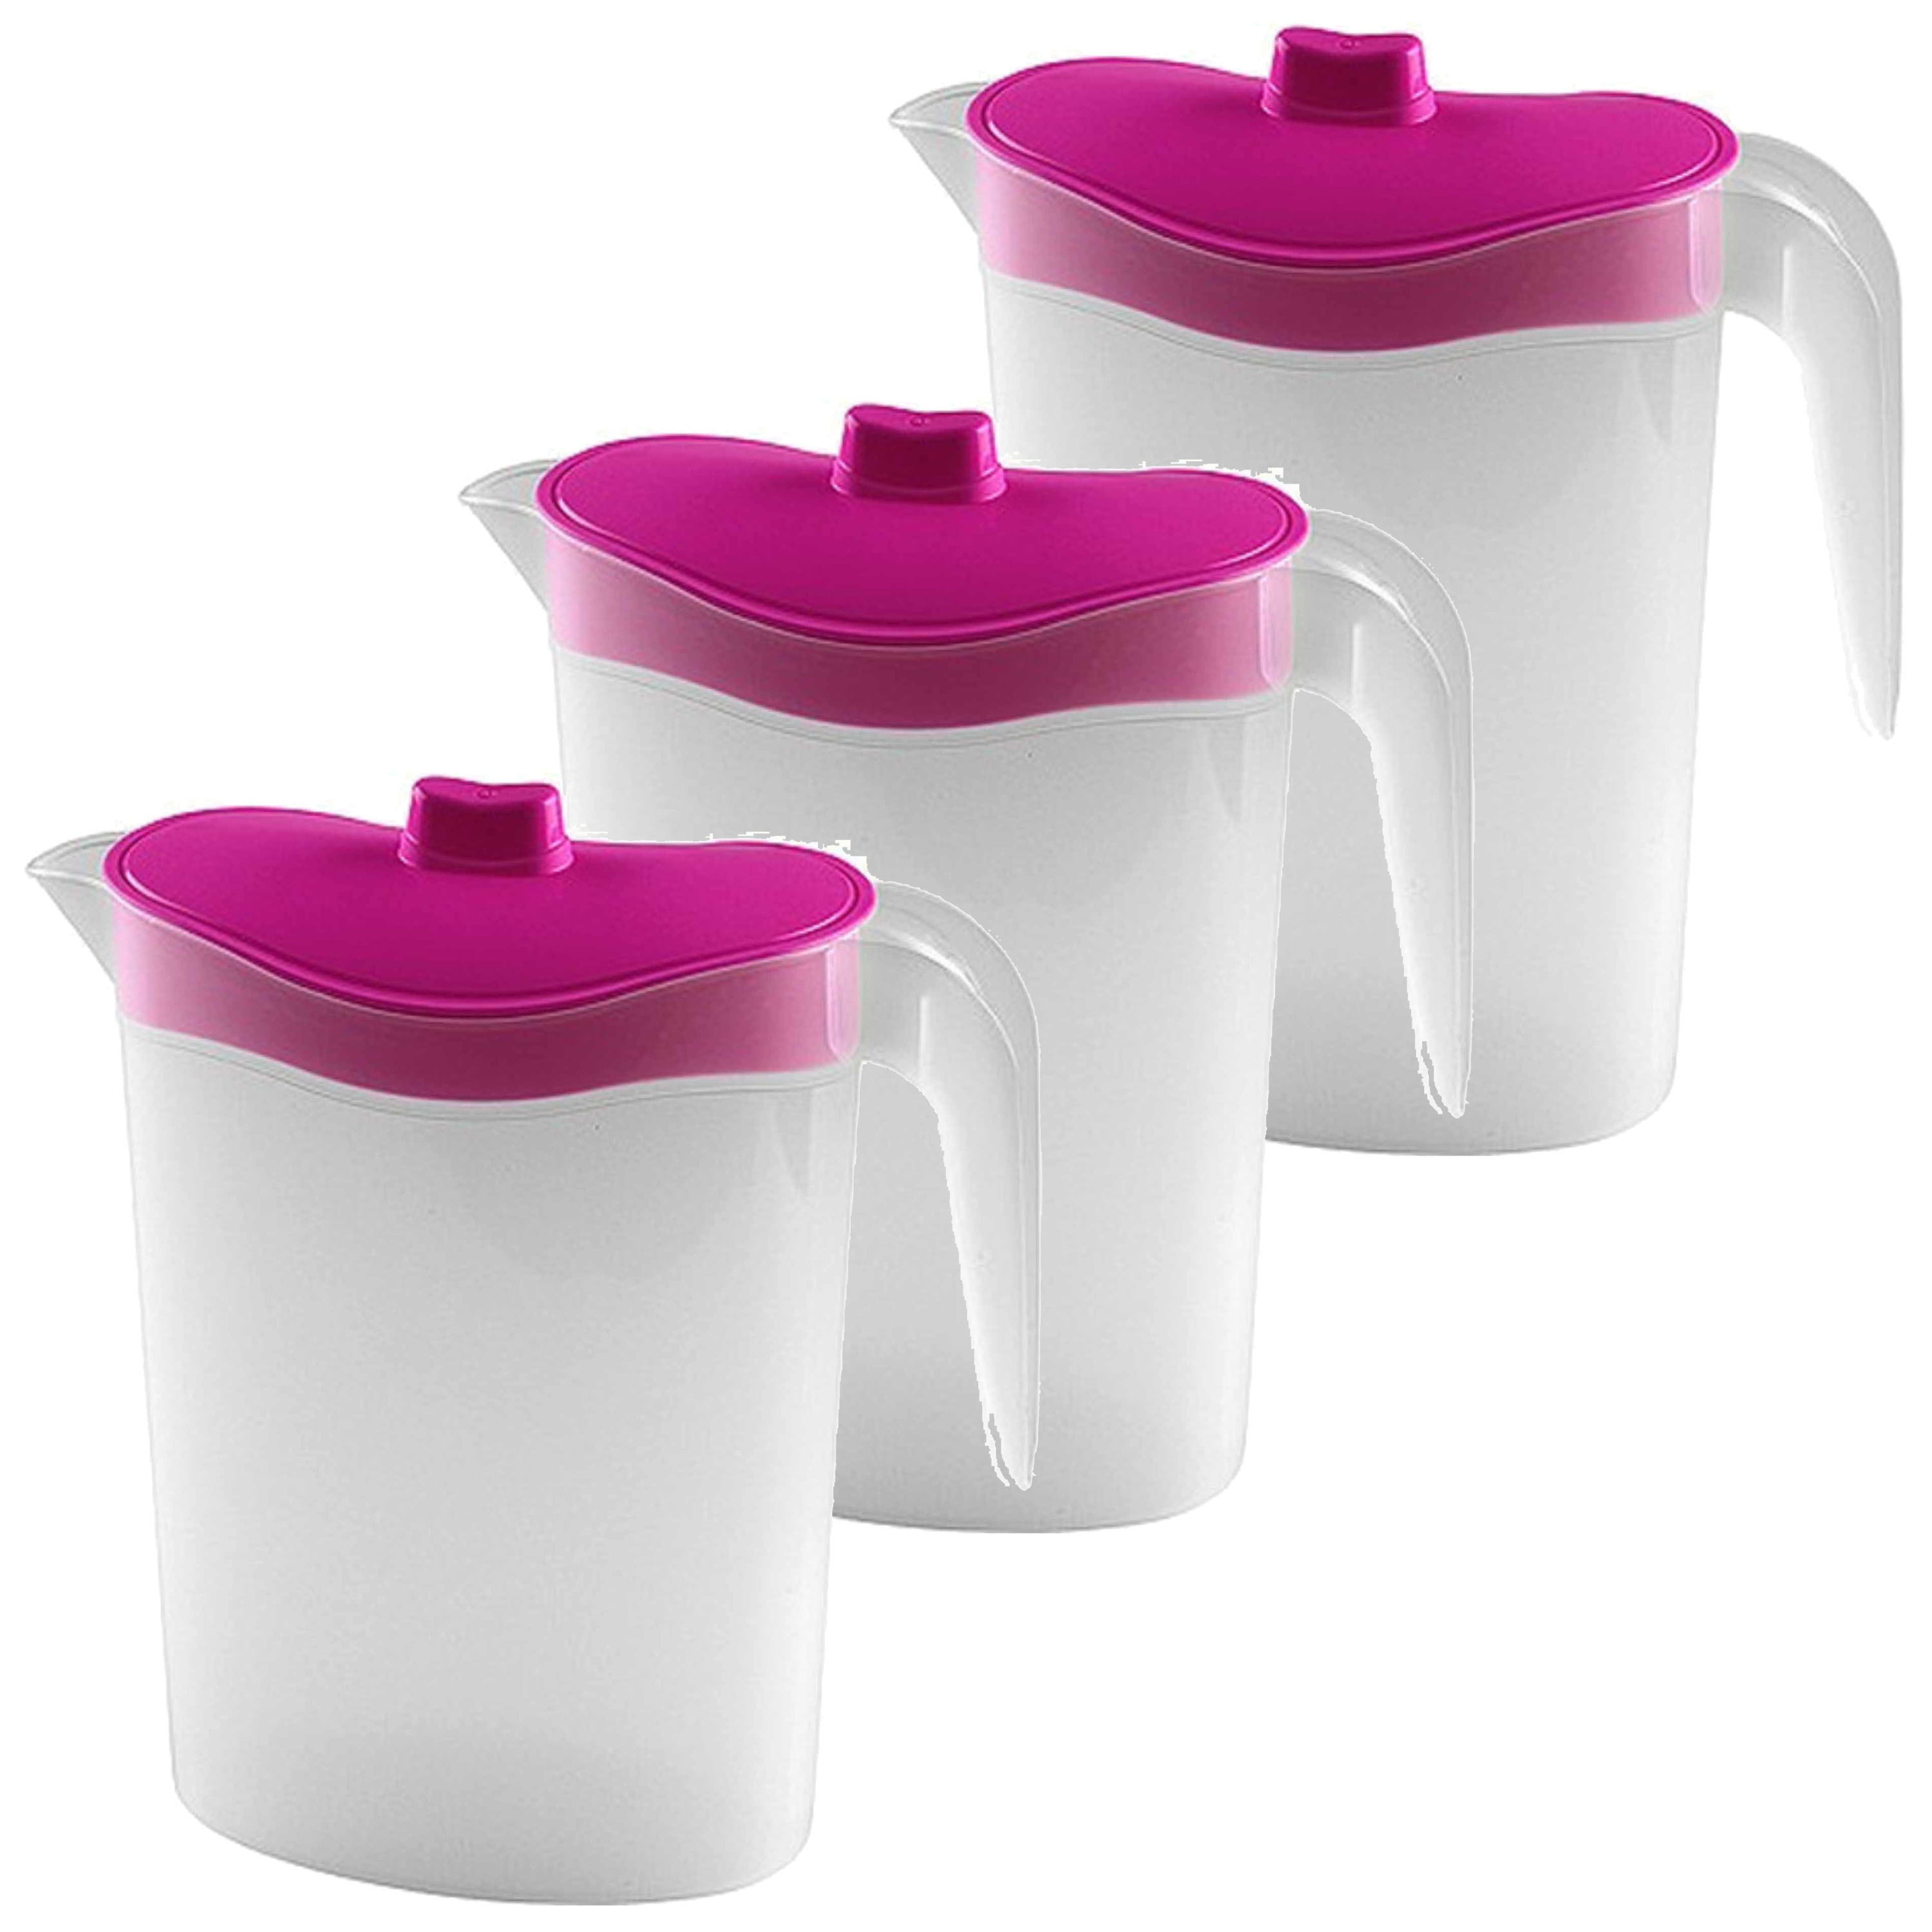 3x Smalle kunststof koelkast schenkkannen 1,5 liter met roze deksel